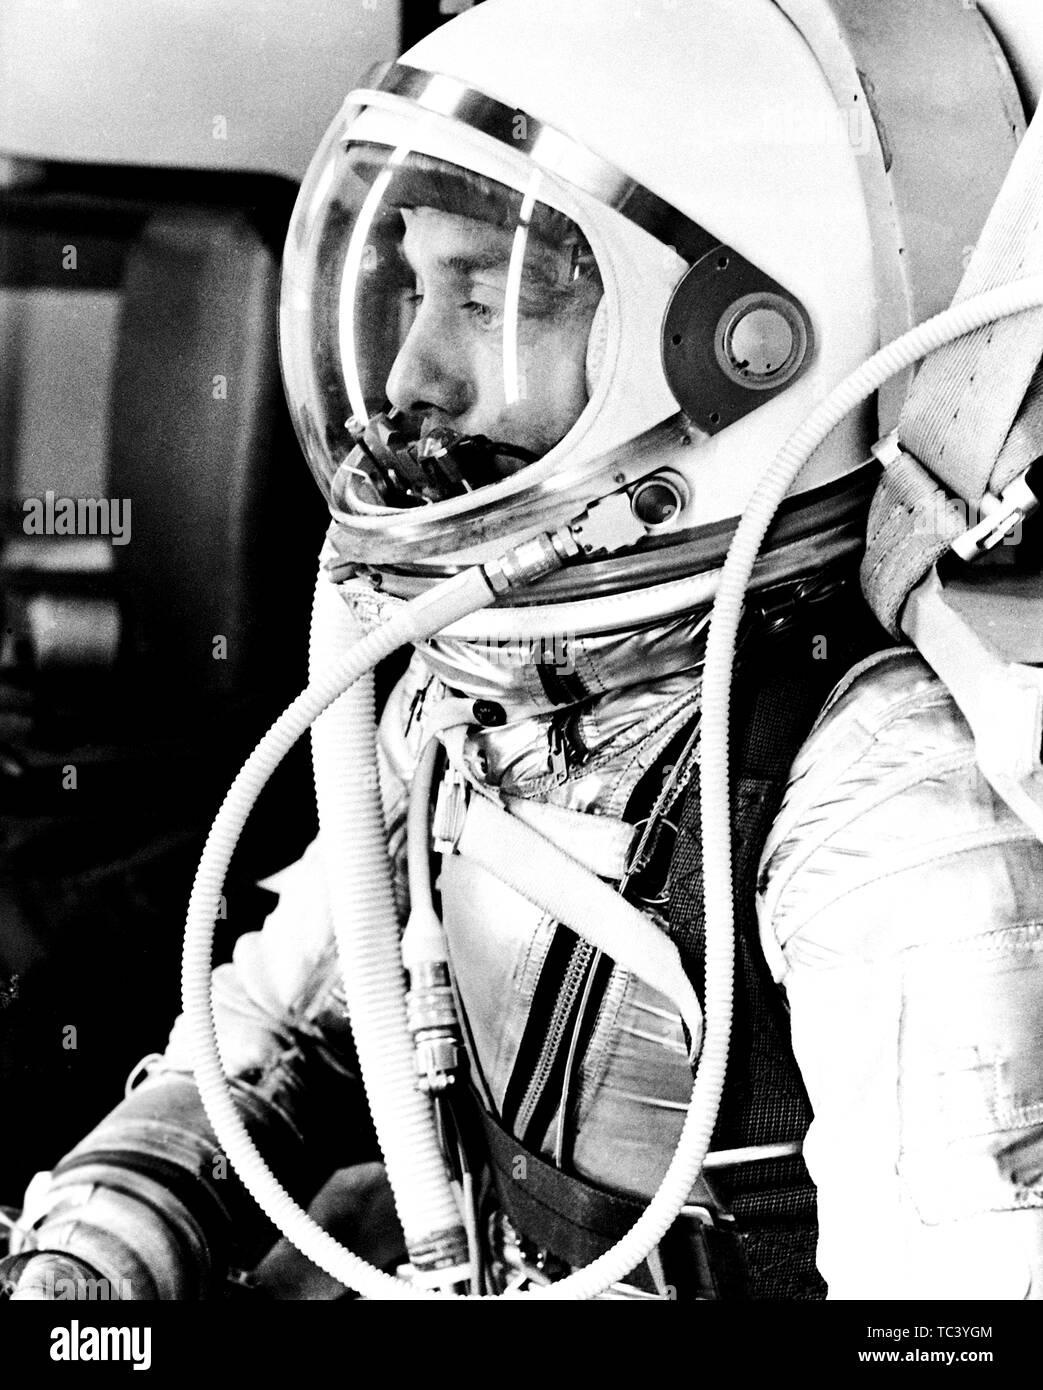 Astronauten Alan Shepard in seinem silbernen Druck klage Vorbereiten einer mercury-redstone 3 (MR-3) zu starten, 5. Mai 1961. Mit freundlicher Genehmigung der Nationalen Luft- und Raumfahrtbehörde (NASA). () Stockfoto